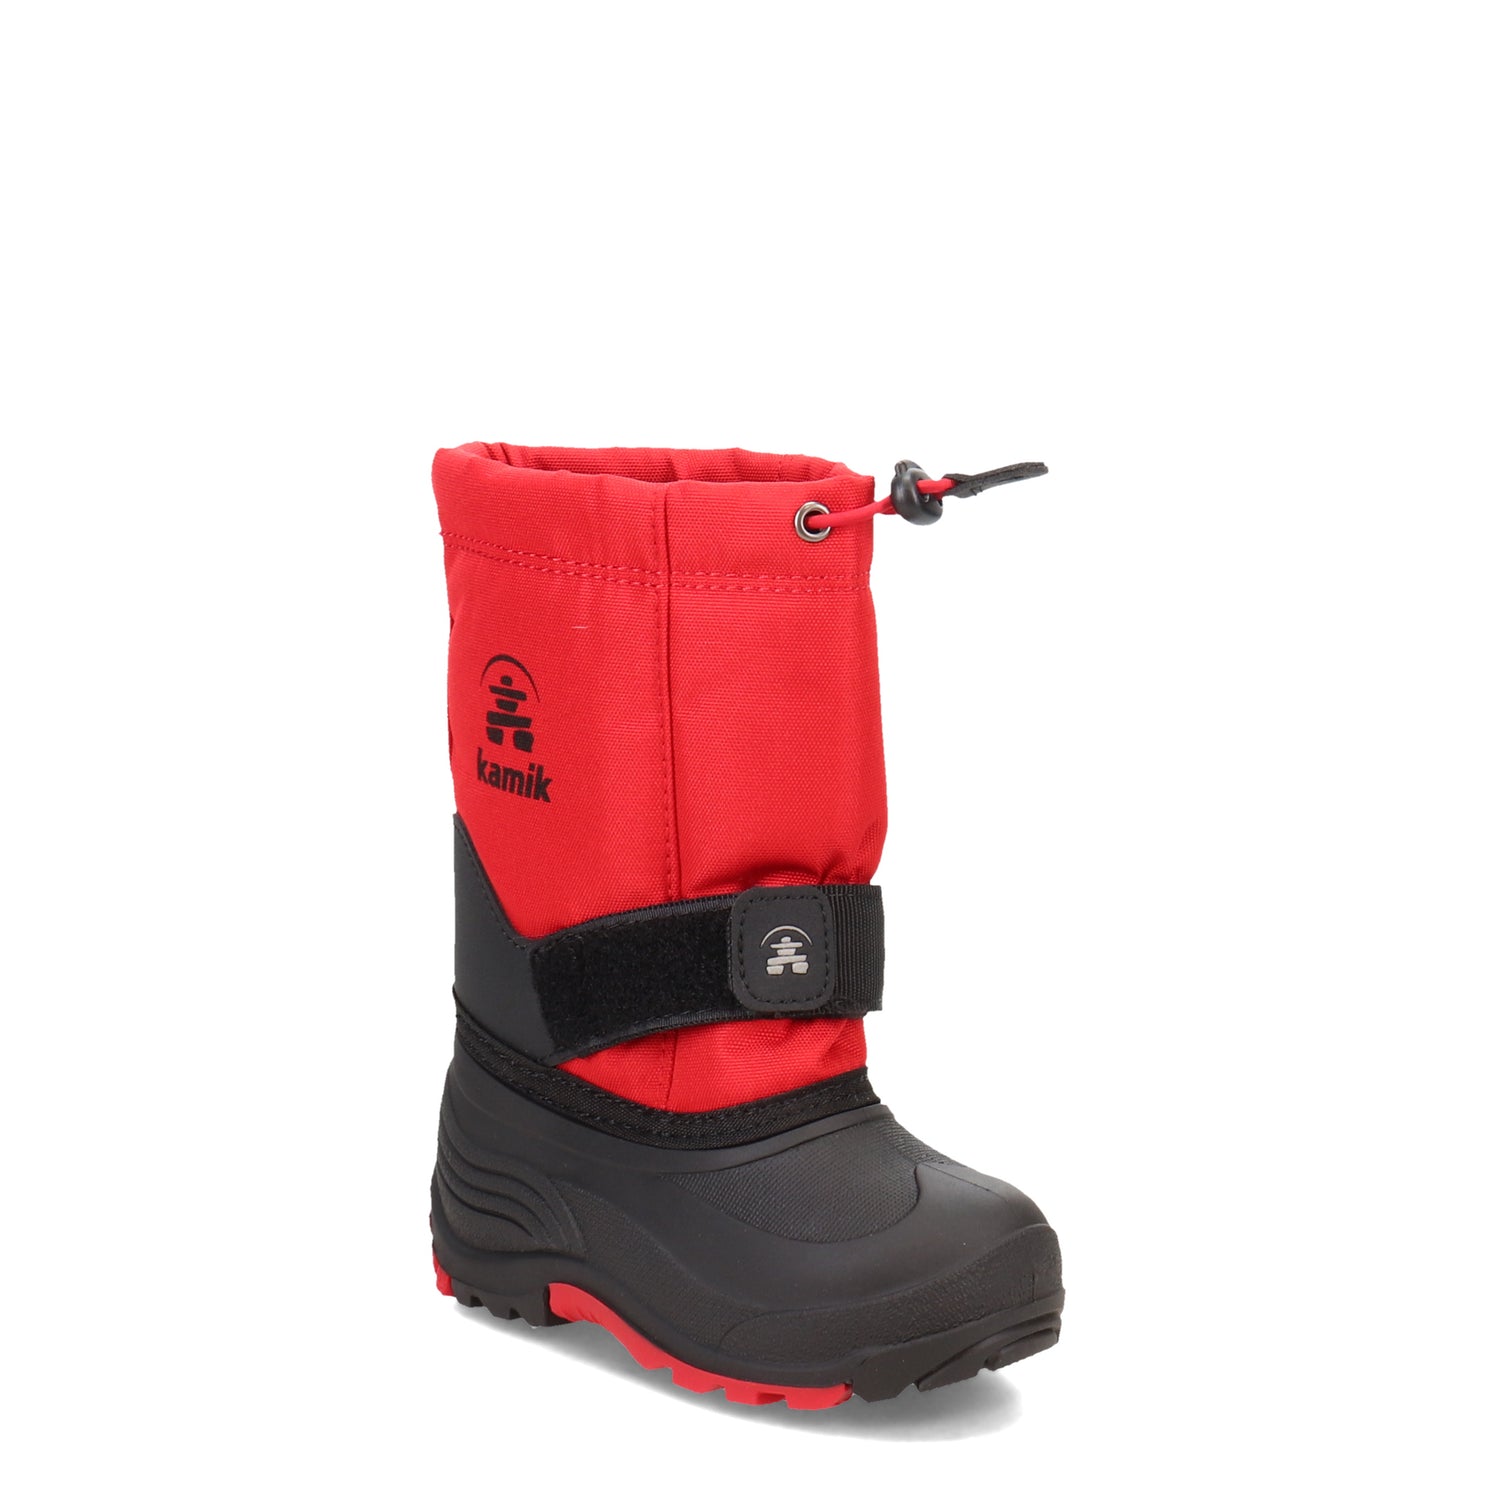 Peltz Shoes  Boy's Kamik Rocket Snow Boot - Toddler & Little Kid RED BEAN NK8325-RED